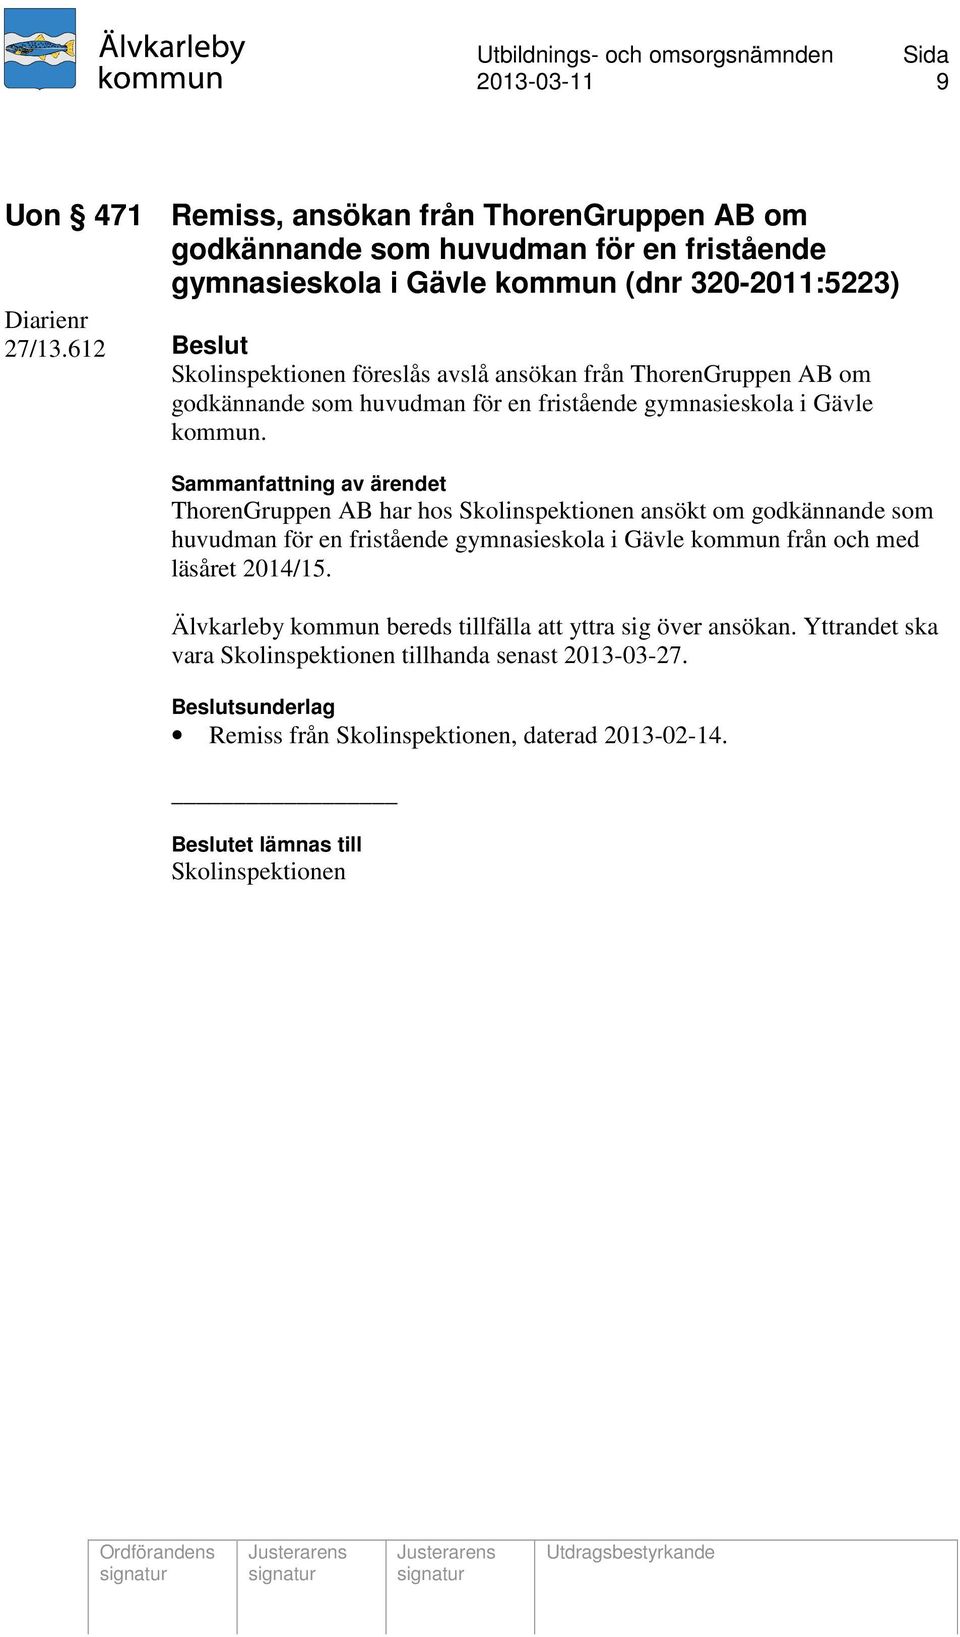 ThorenGruppen AB har hos Skolinspektionen ansökt om godkännande som huvudman för en fristående gymnasieskola i Gävle kommun från och med läsåret 2014/15.